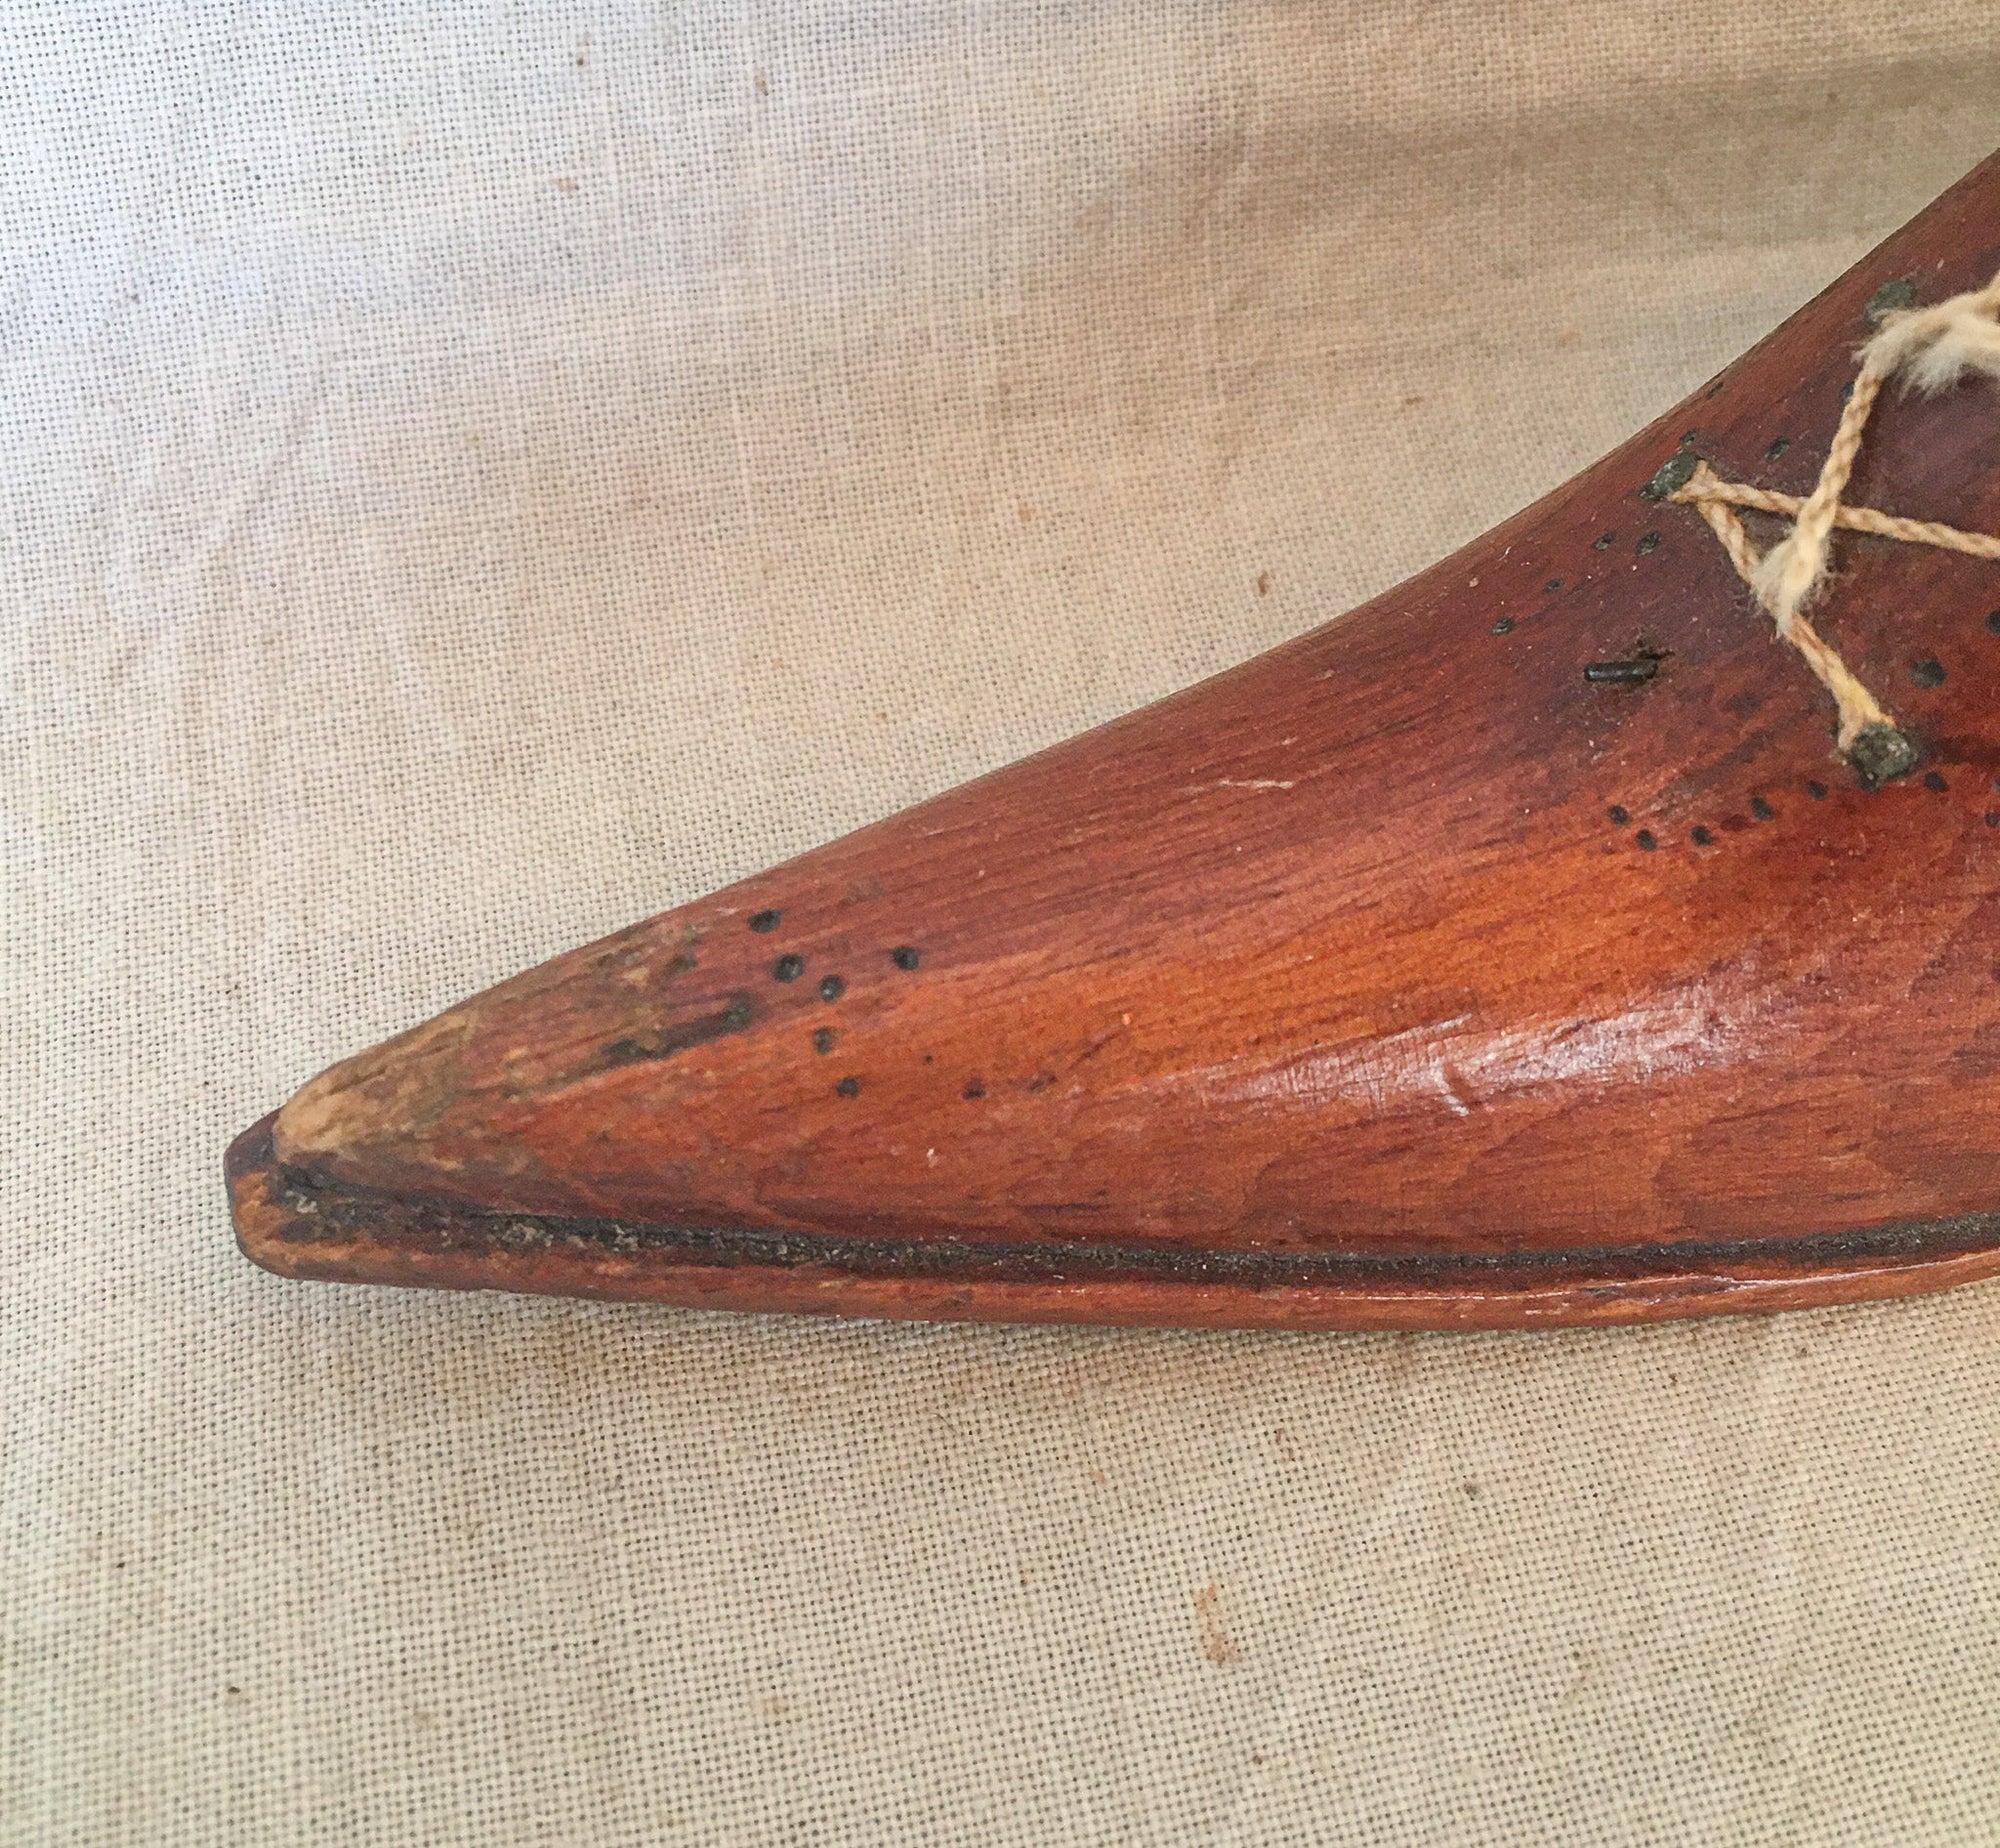 19th Century Men’s Wooden Shoe Pin Cushion